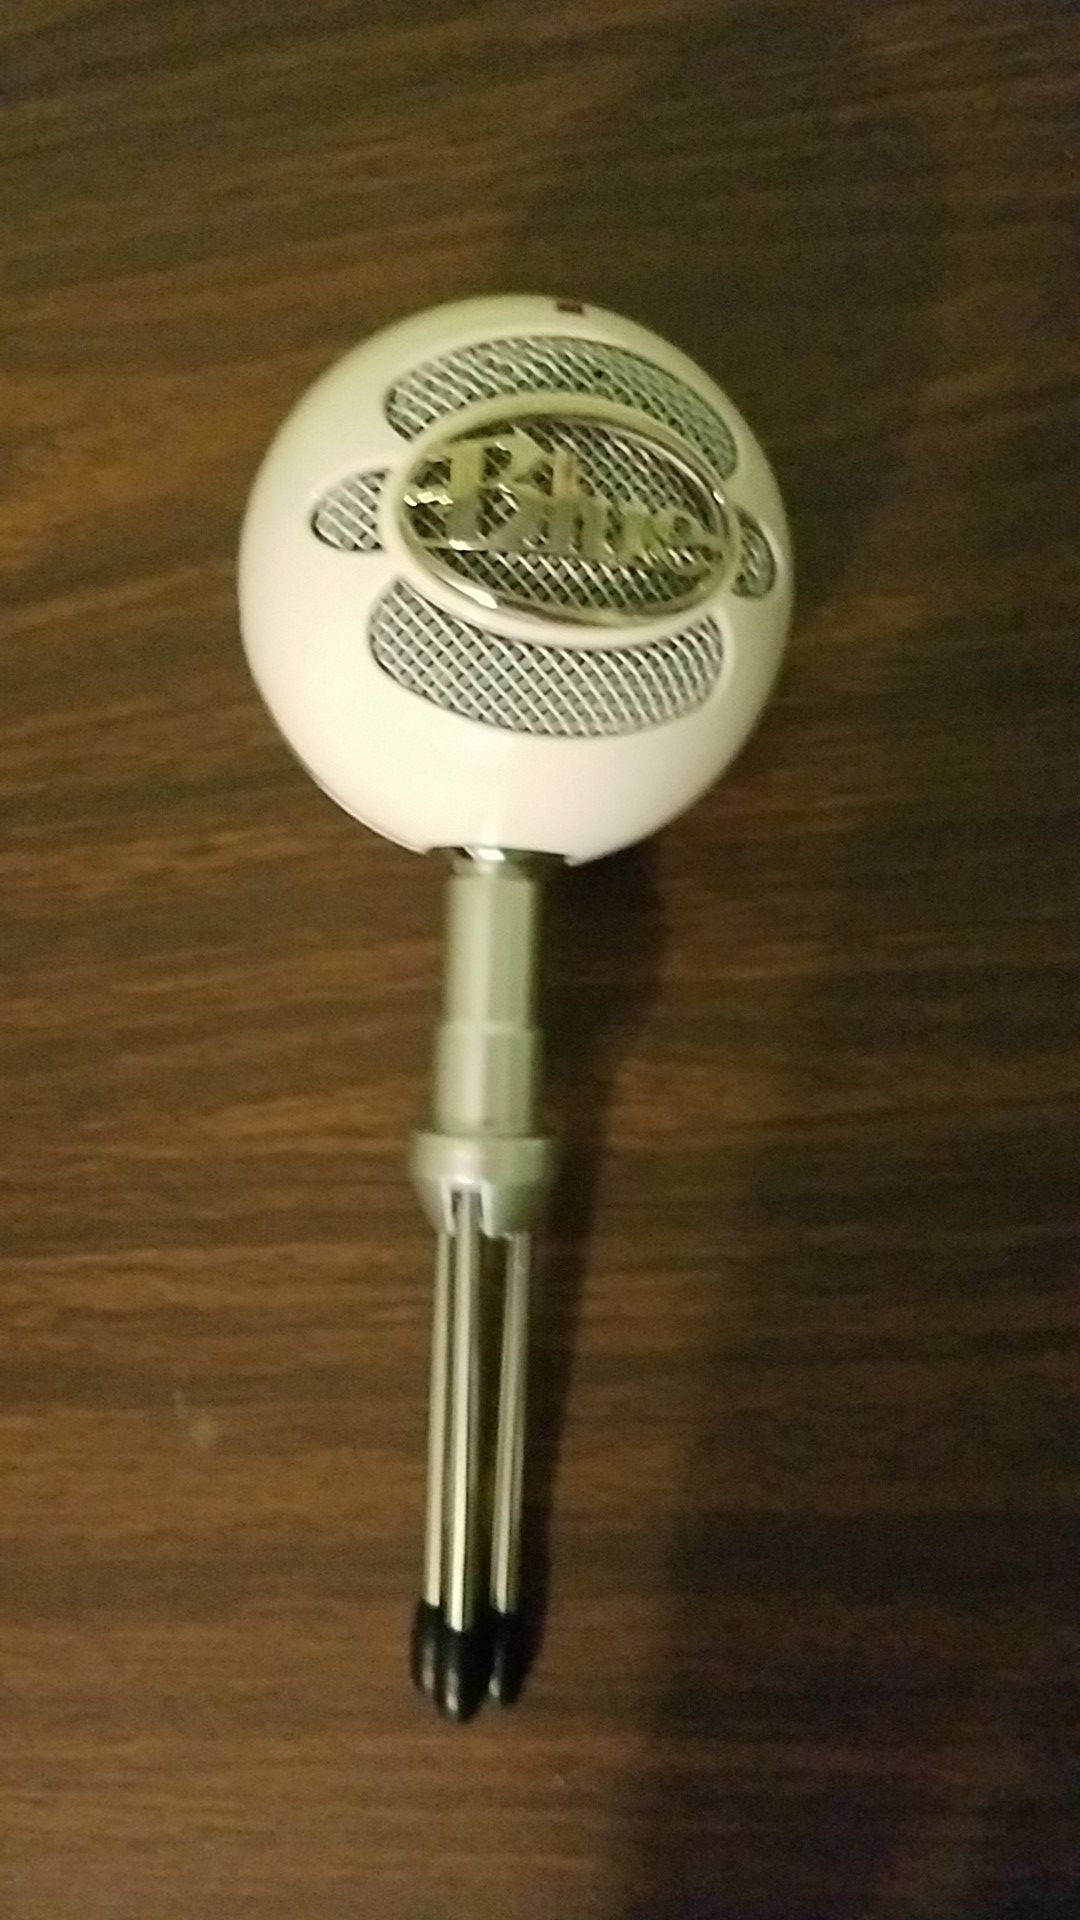 Snow ball mic